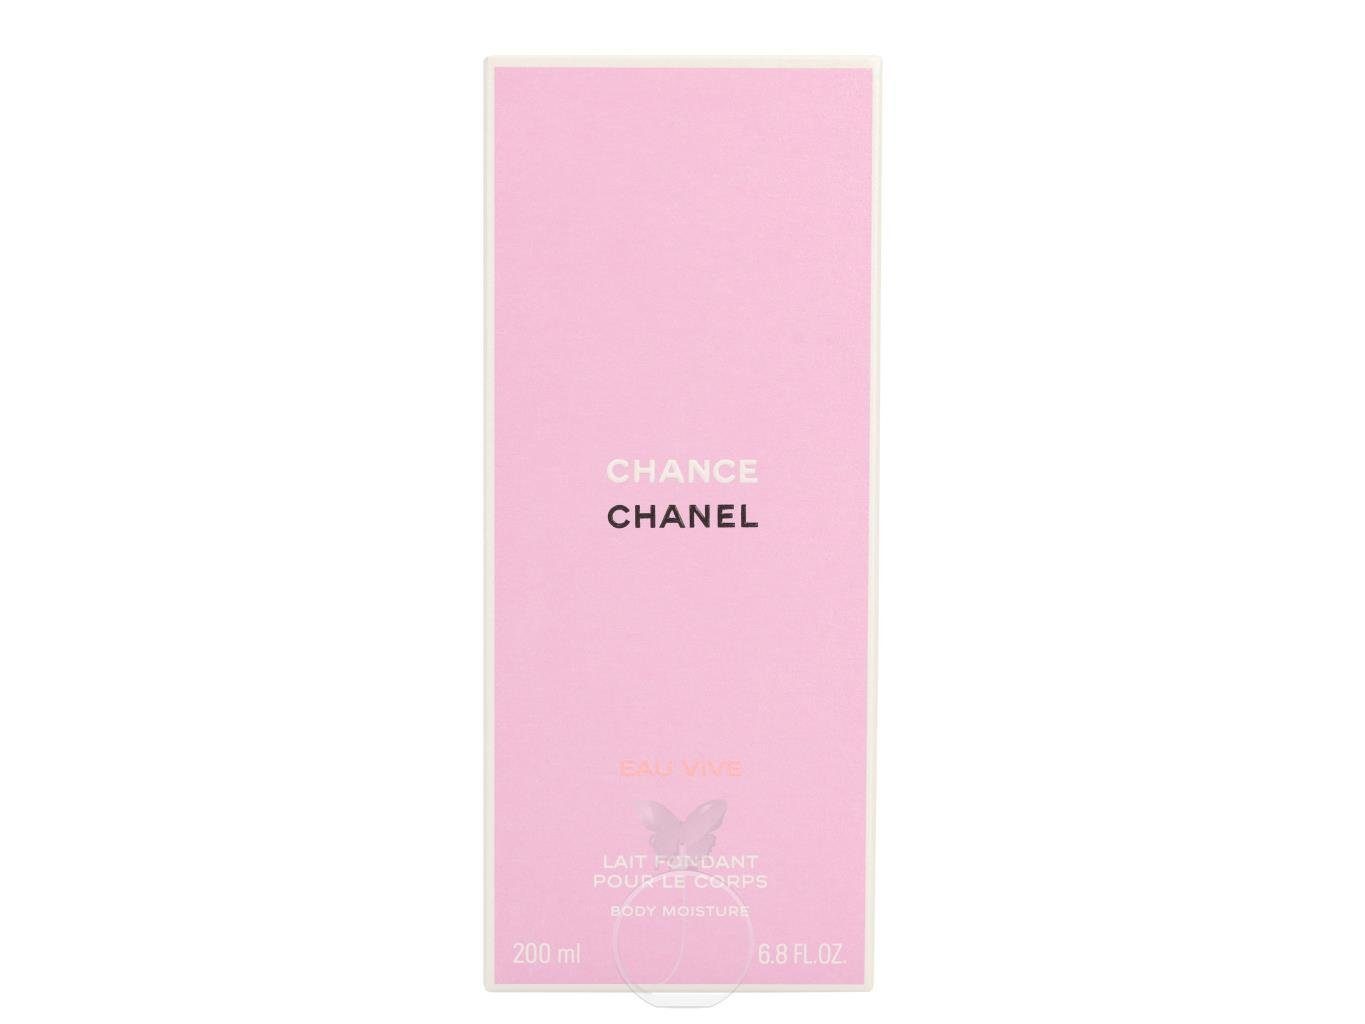 CHANEL Body Chance Vive Bodylotion ml 200 Chanel Lotion Eau